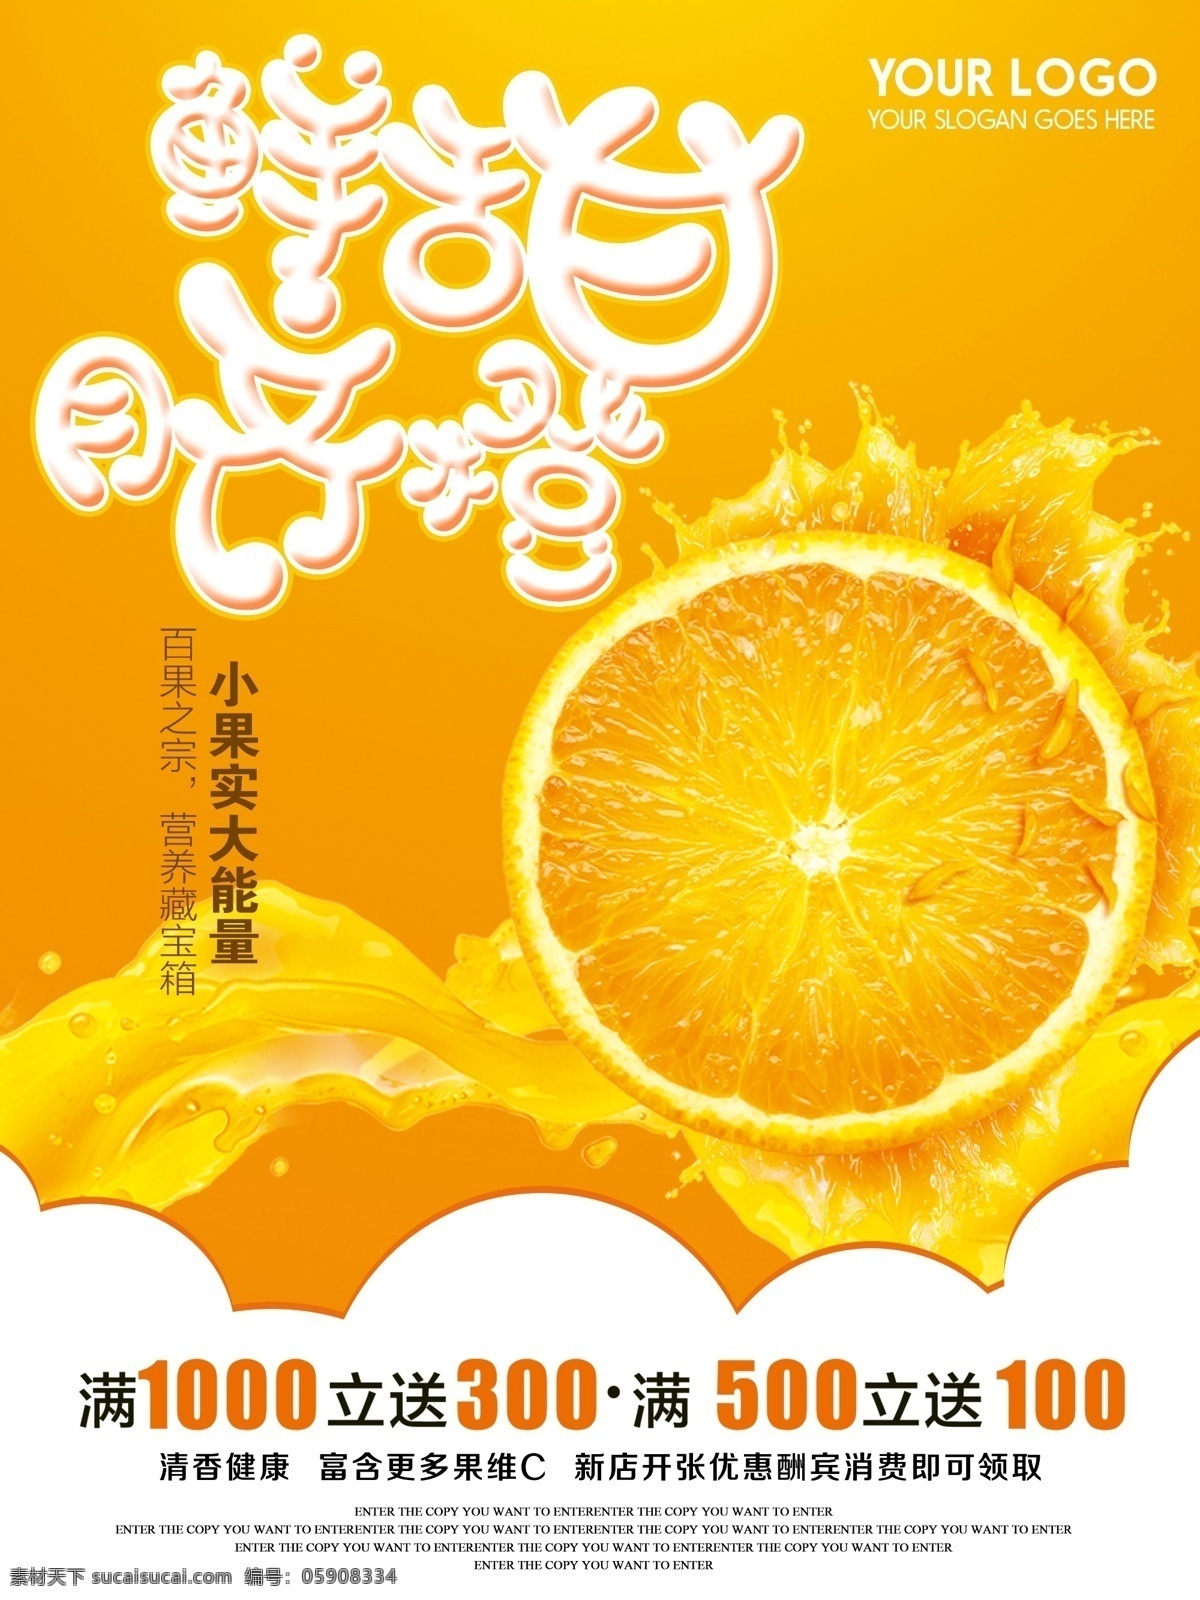 鲜甜 脐橙 新店 开张 促销 商业 海报 水果 新店开张